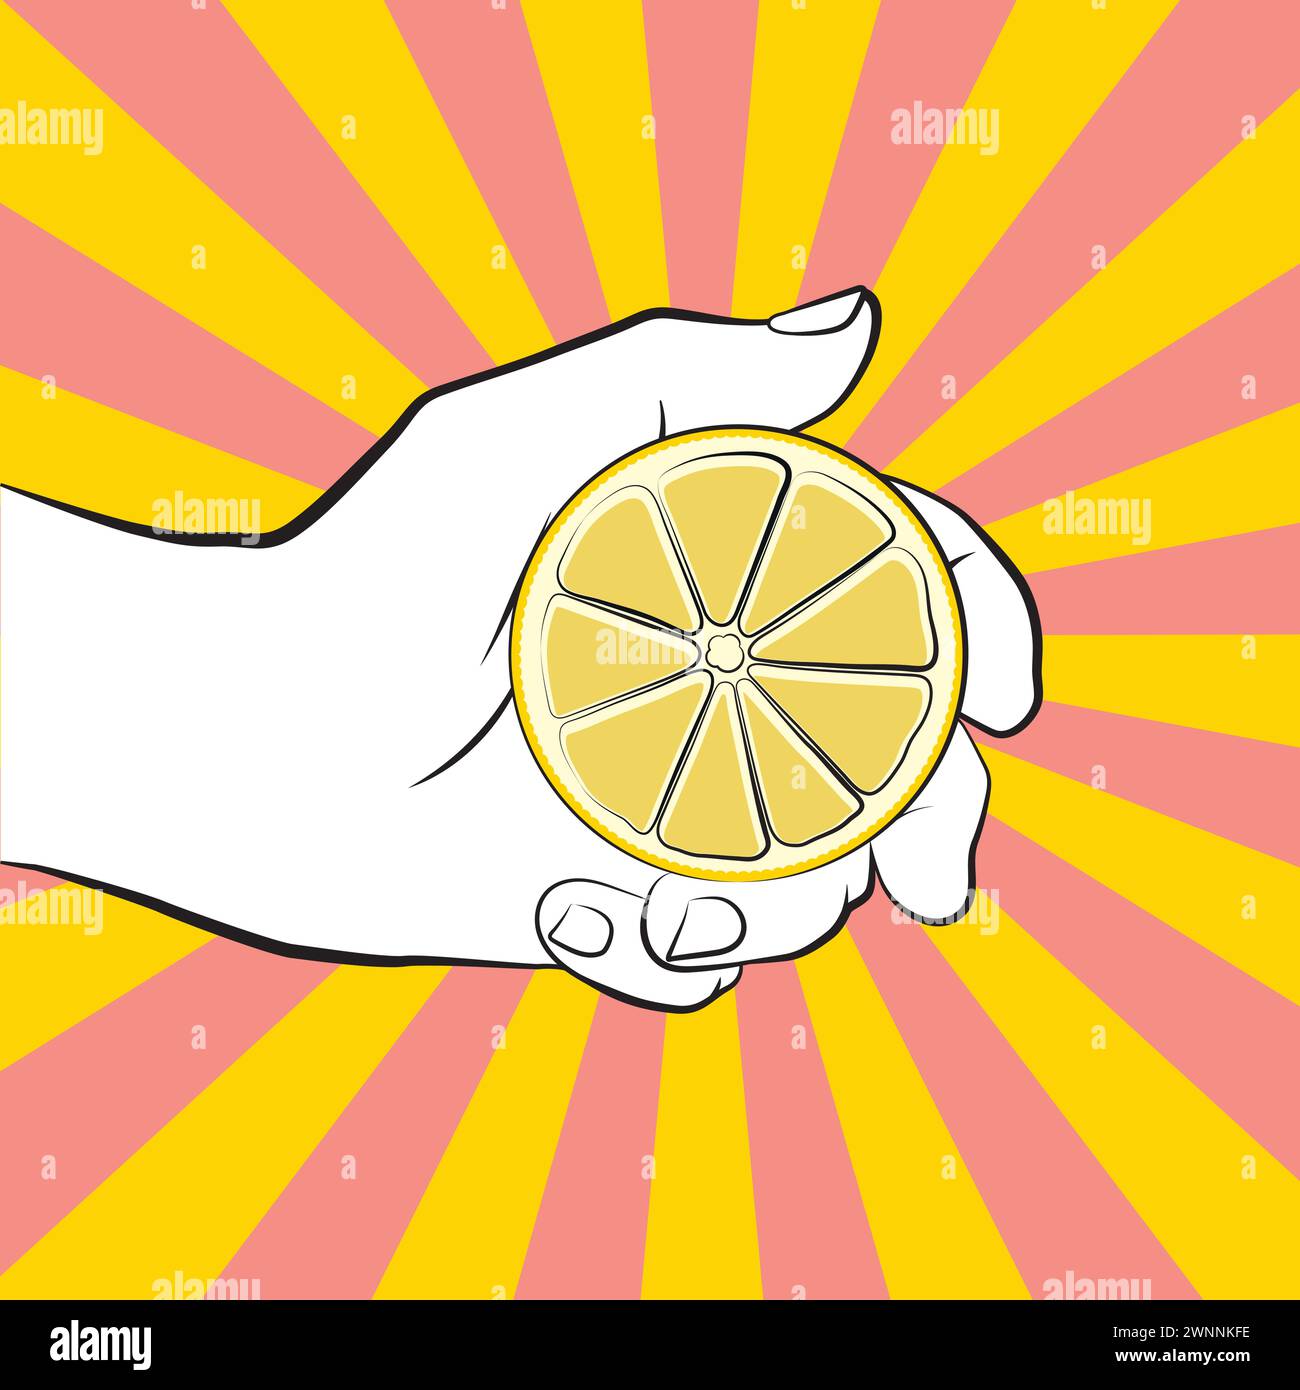 Eine farbenfrohe Hand, die eine Zitrone im Pop-Art-Stil hält Stock Vektor